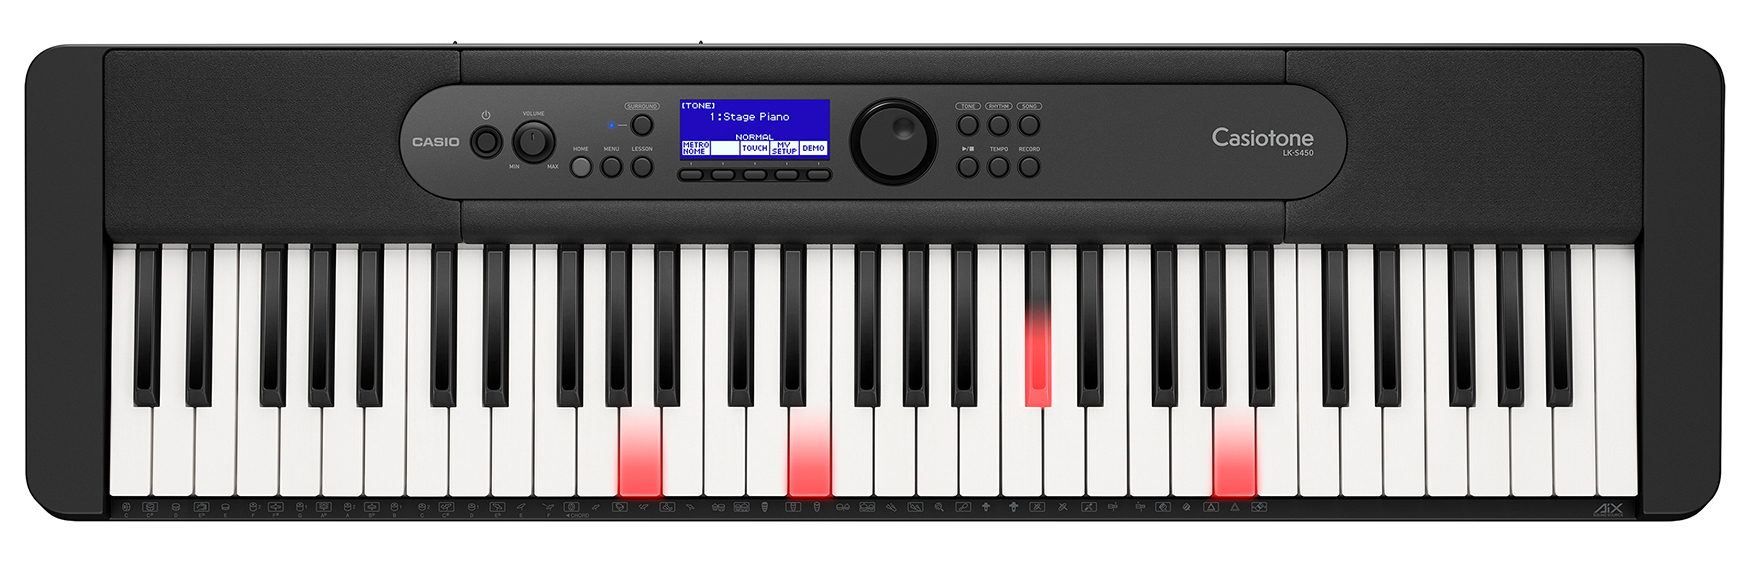 Køb Casio LK-S450 Keyboard med lys i tangenterne - Pris 2149.00 kr.